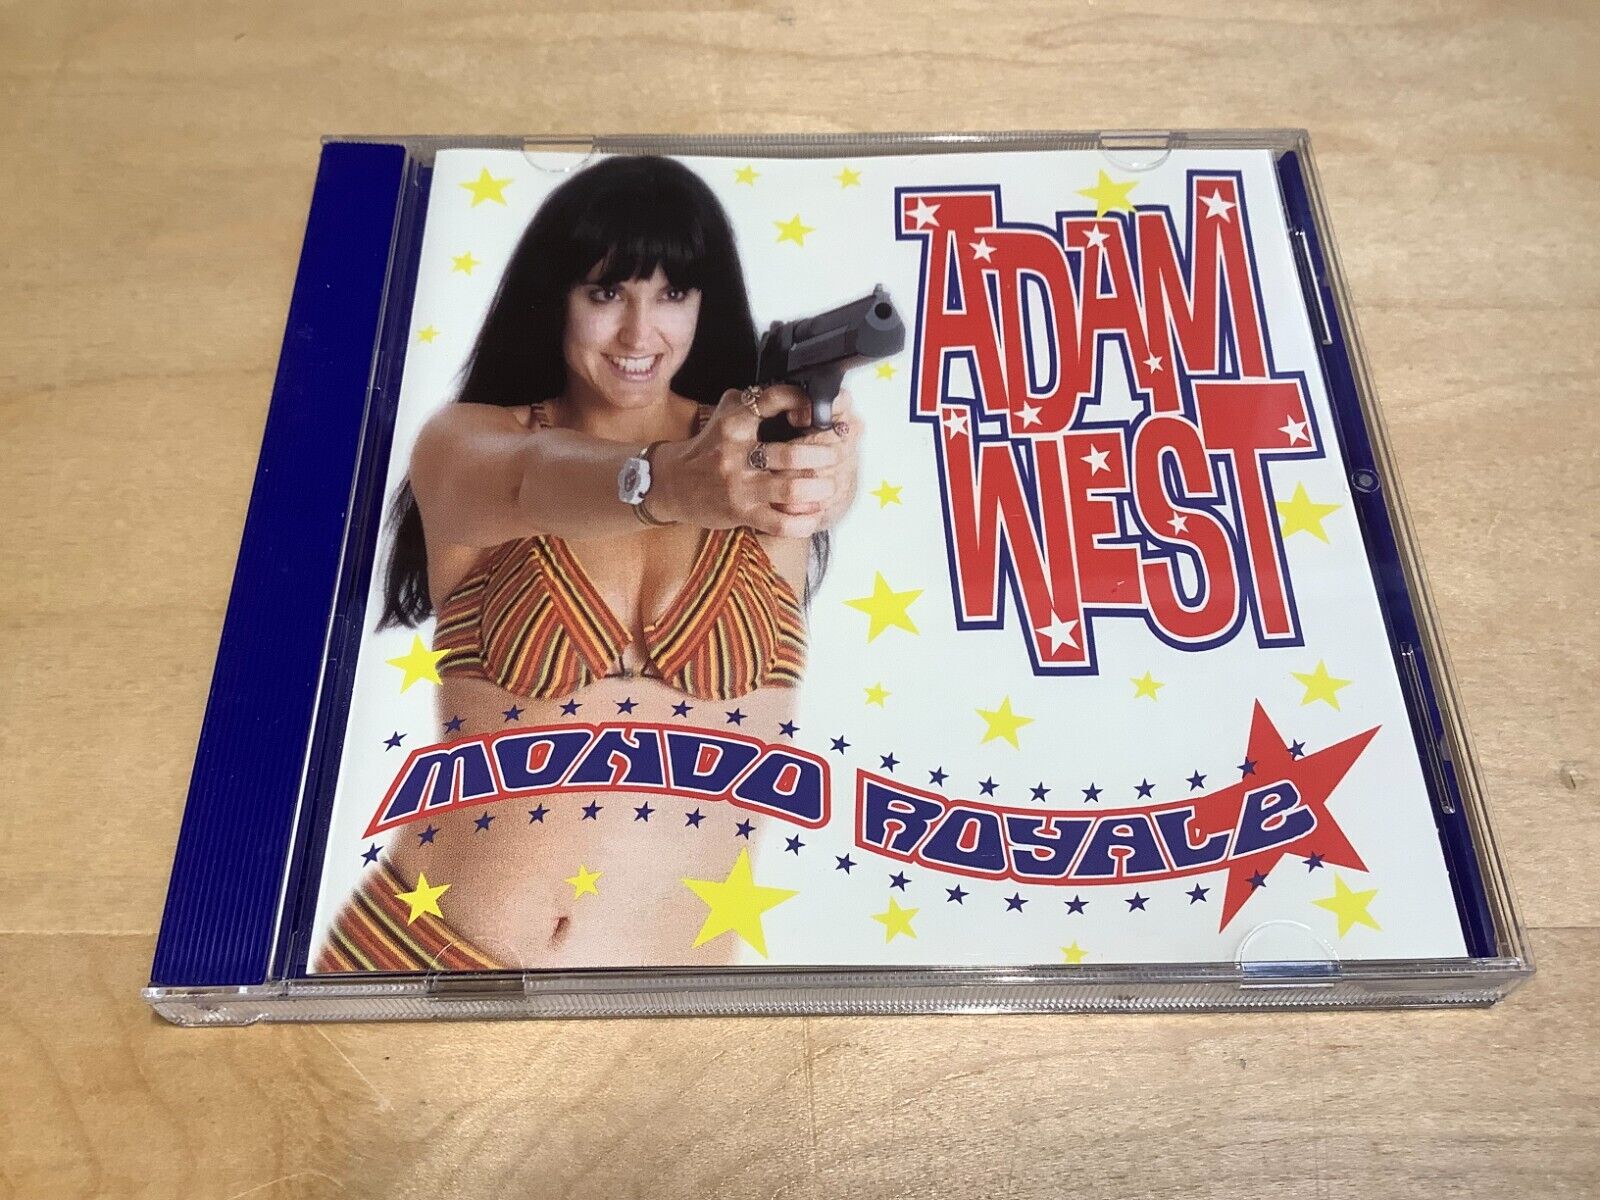 ADAM WEST - Mondo Royale CD (Fandango Records, 1997) Rare OOP